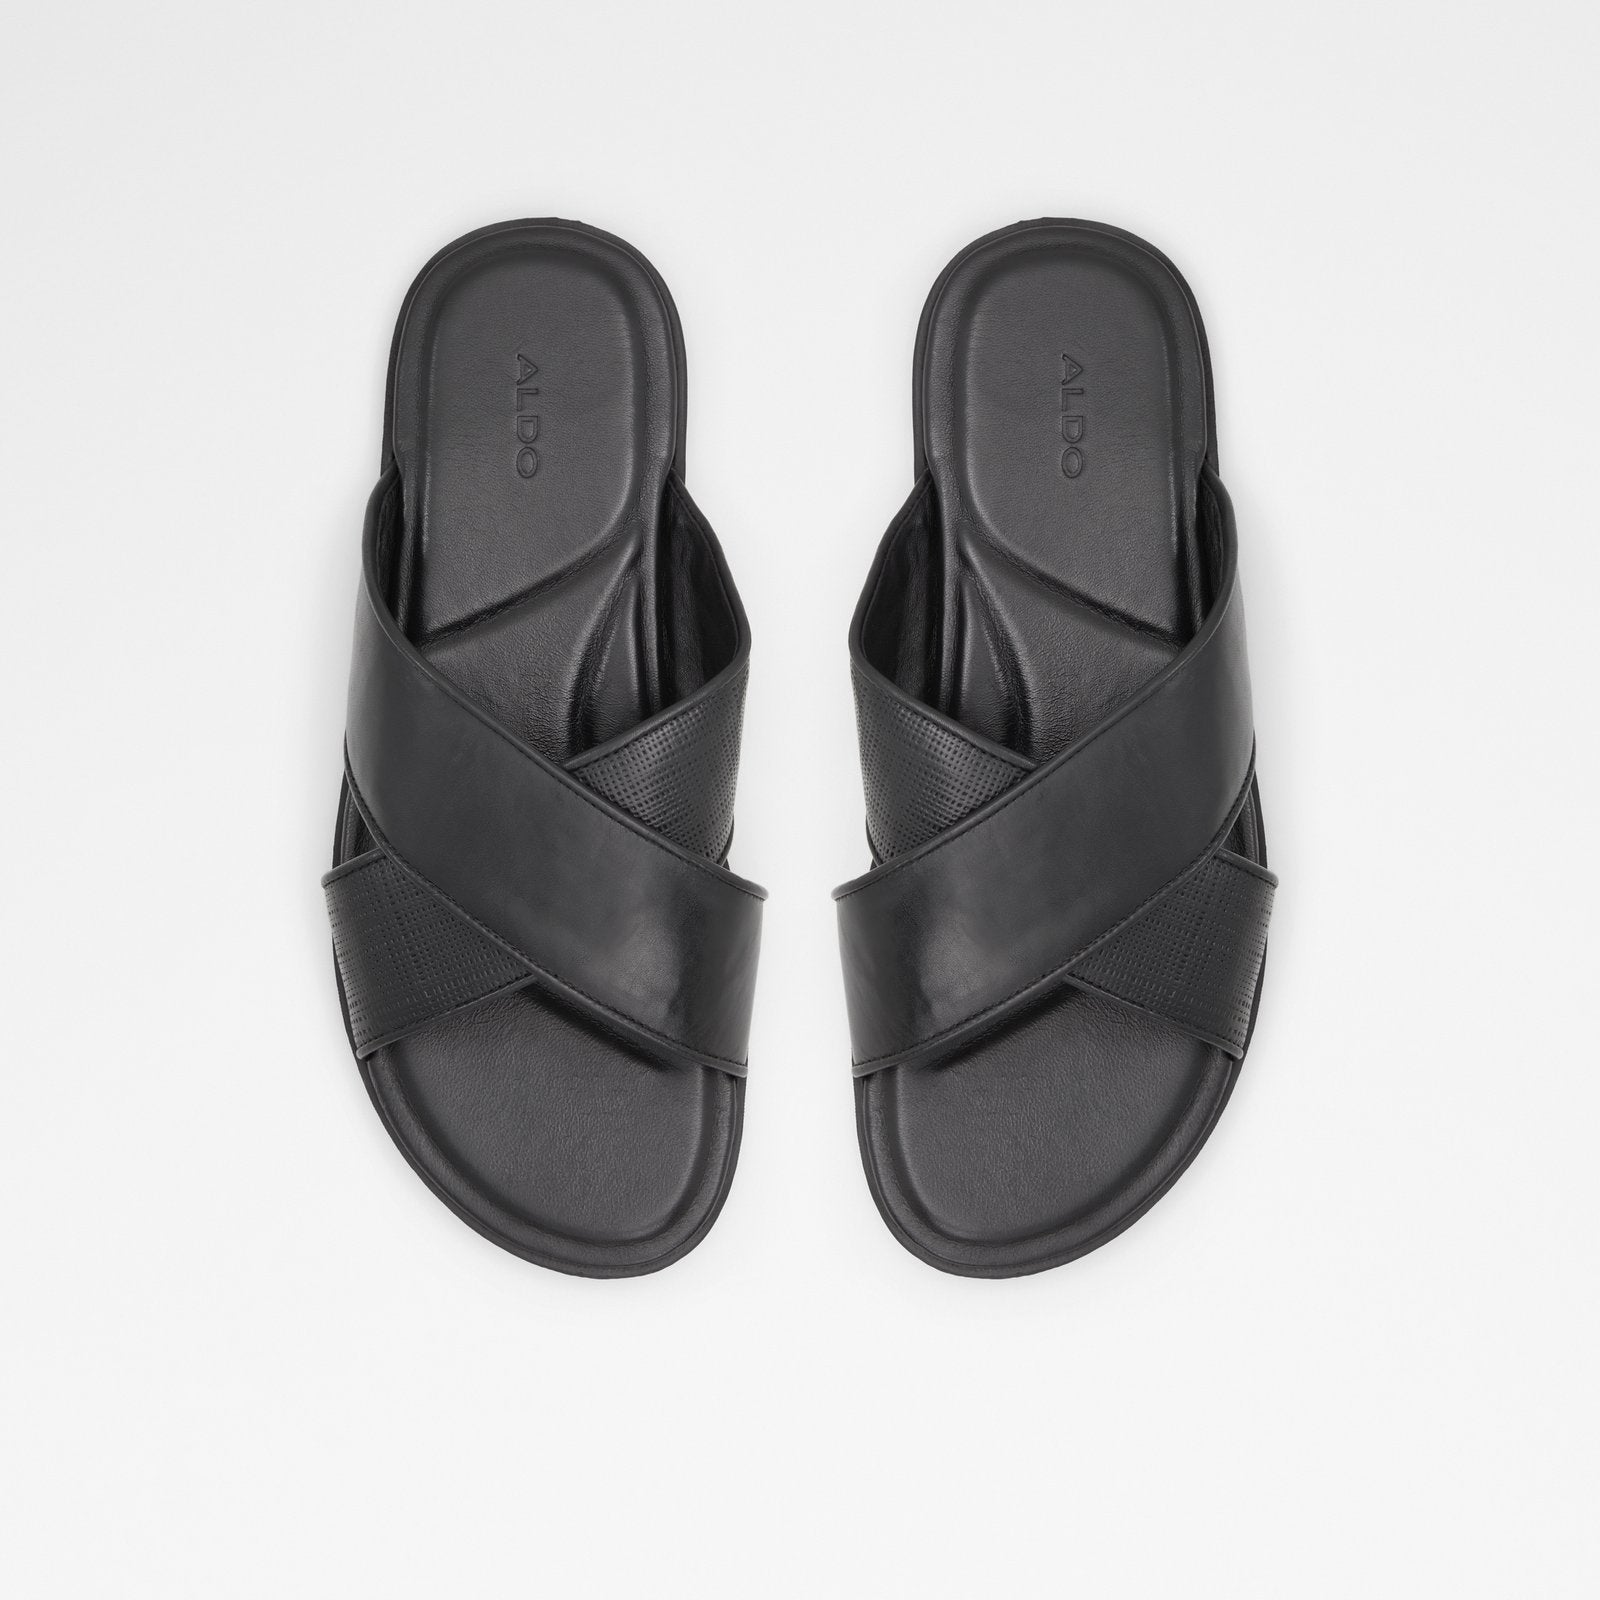 Omer Men Shoes - Black - ALDO KSA